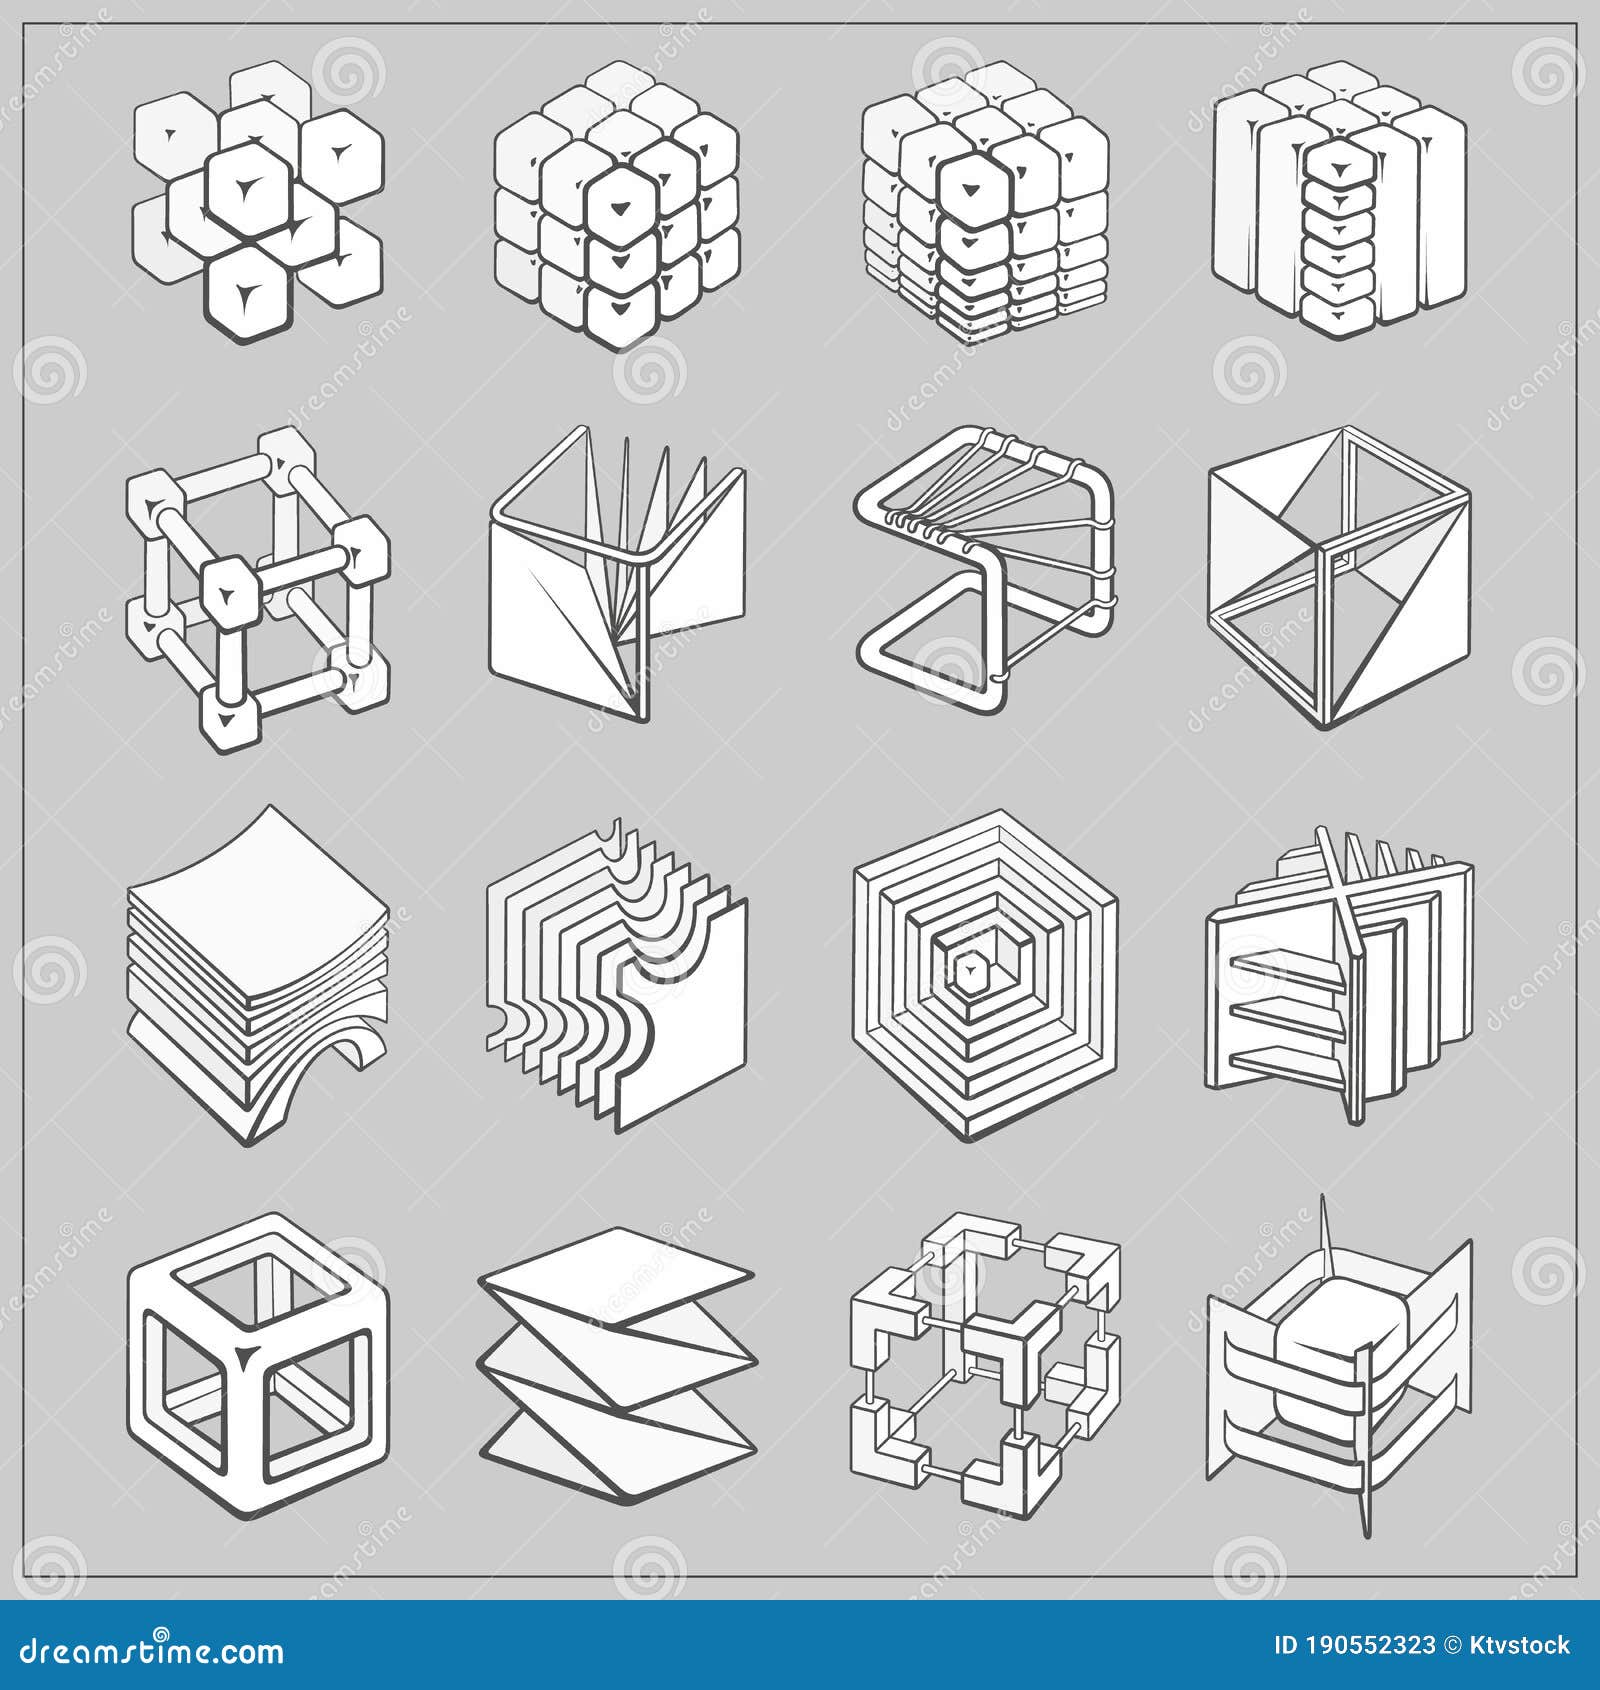 Cuadrado Cubo Cubos cuadrados patternt Plástico Plantilla Reutilizable geométrico de Mylar 